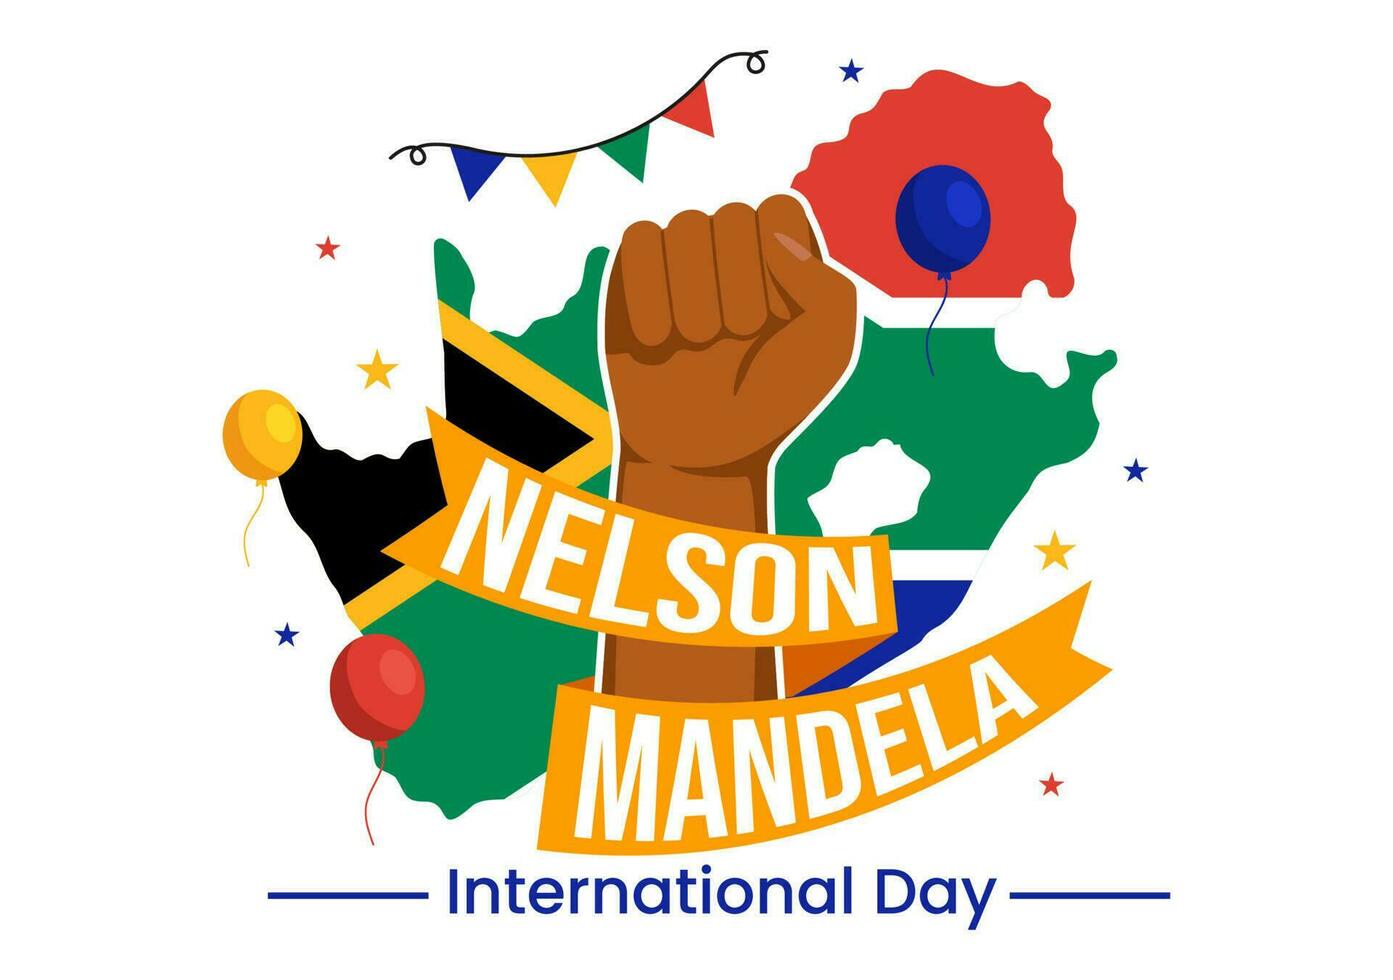 feliz Nelson Mandela internacional dia vetor ilustração em 18 Julho com sul África bandeira dentro plano desenho animado mão desenhado aterrissagem página modelos